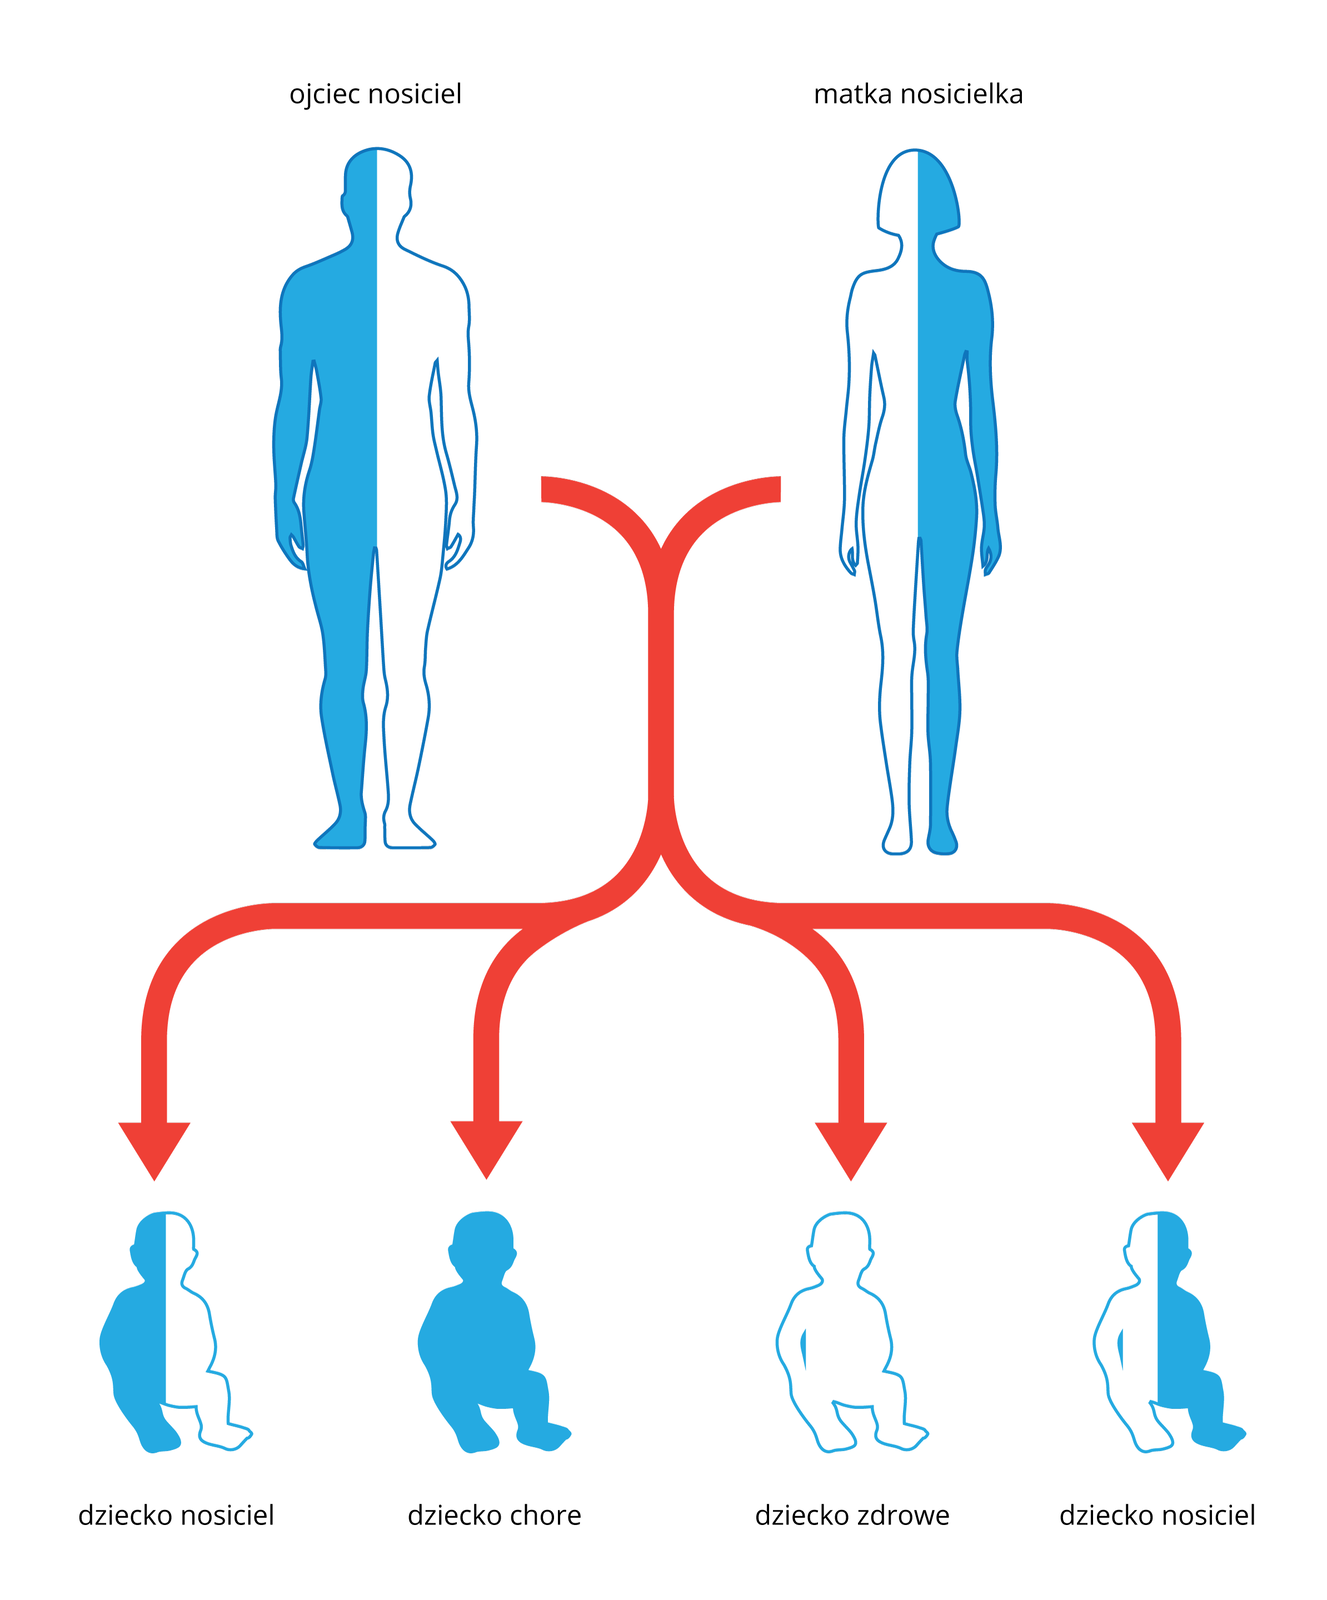 Ilustracja przedstawia schematycznie dziedziczenie mukowiscydozy. U góry sylwetka mężczyzny i kobiety, każda w połowie niebieska. Oznacza to, że ludzie ci są nosicielami zmutowanego genu mukowiscydozy. Czerwone strzałki wskazują sylwetki dzieci, potomstwa tej pary. Sylwetka w połowie niebieska oznacza nosiciela, cała niebieska dziecko chore a bezbarwna to dziecko zdrowe.